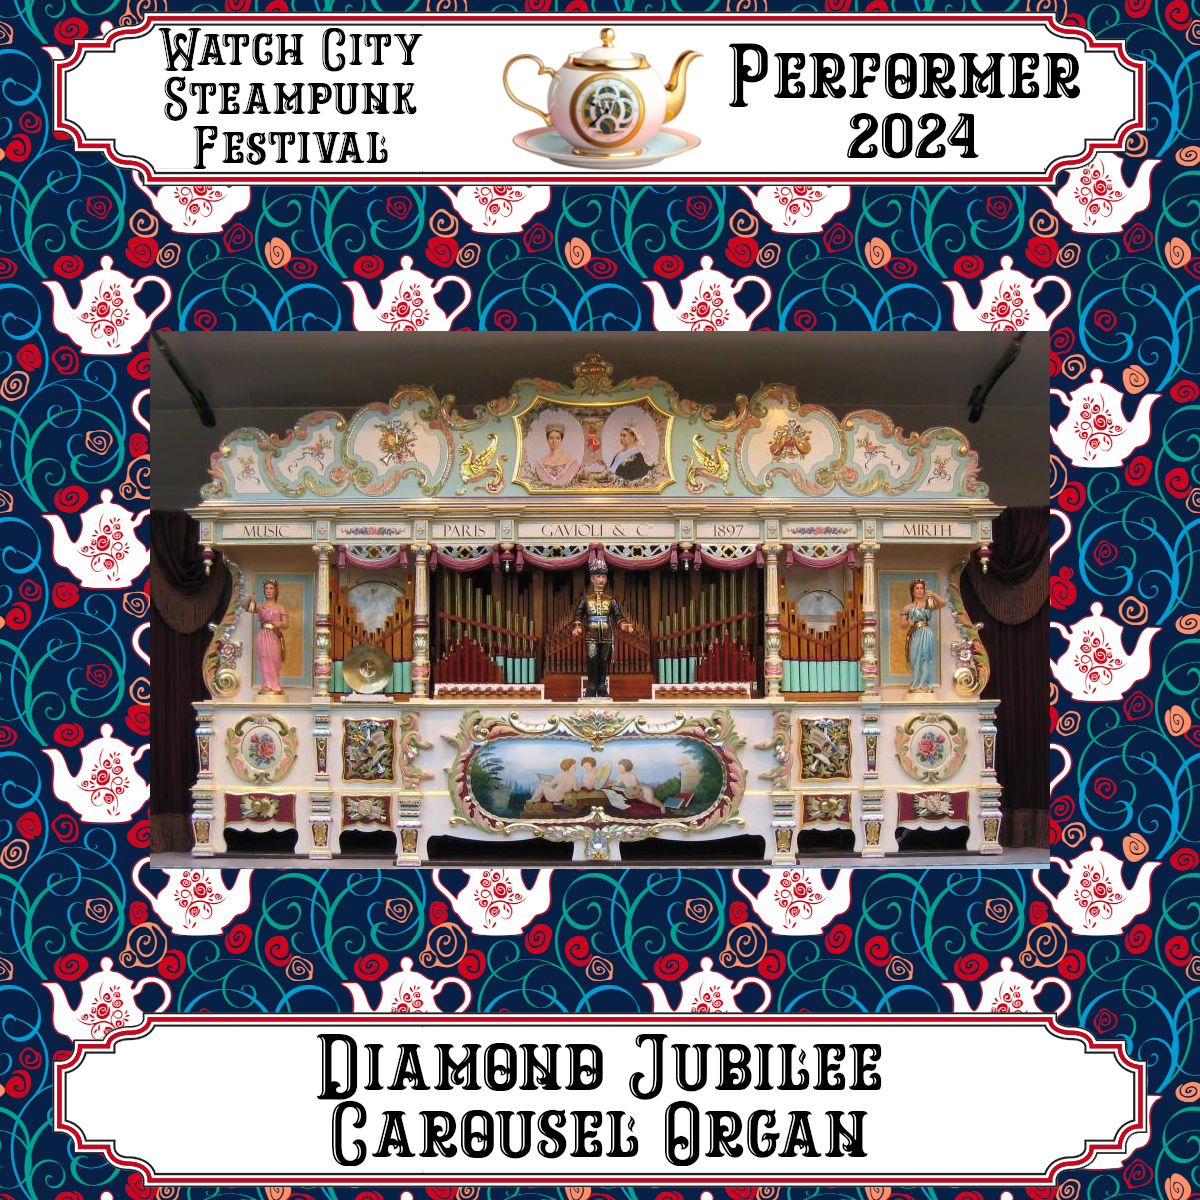 Diamond Jubilee Carousel Organ